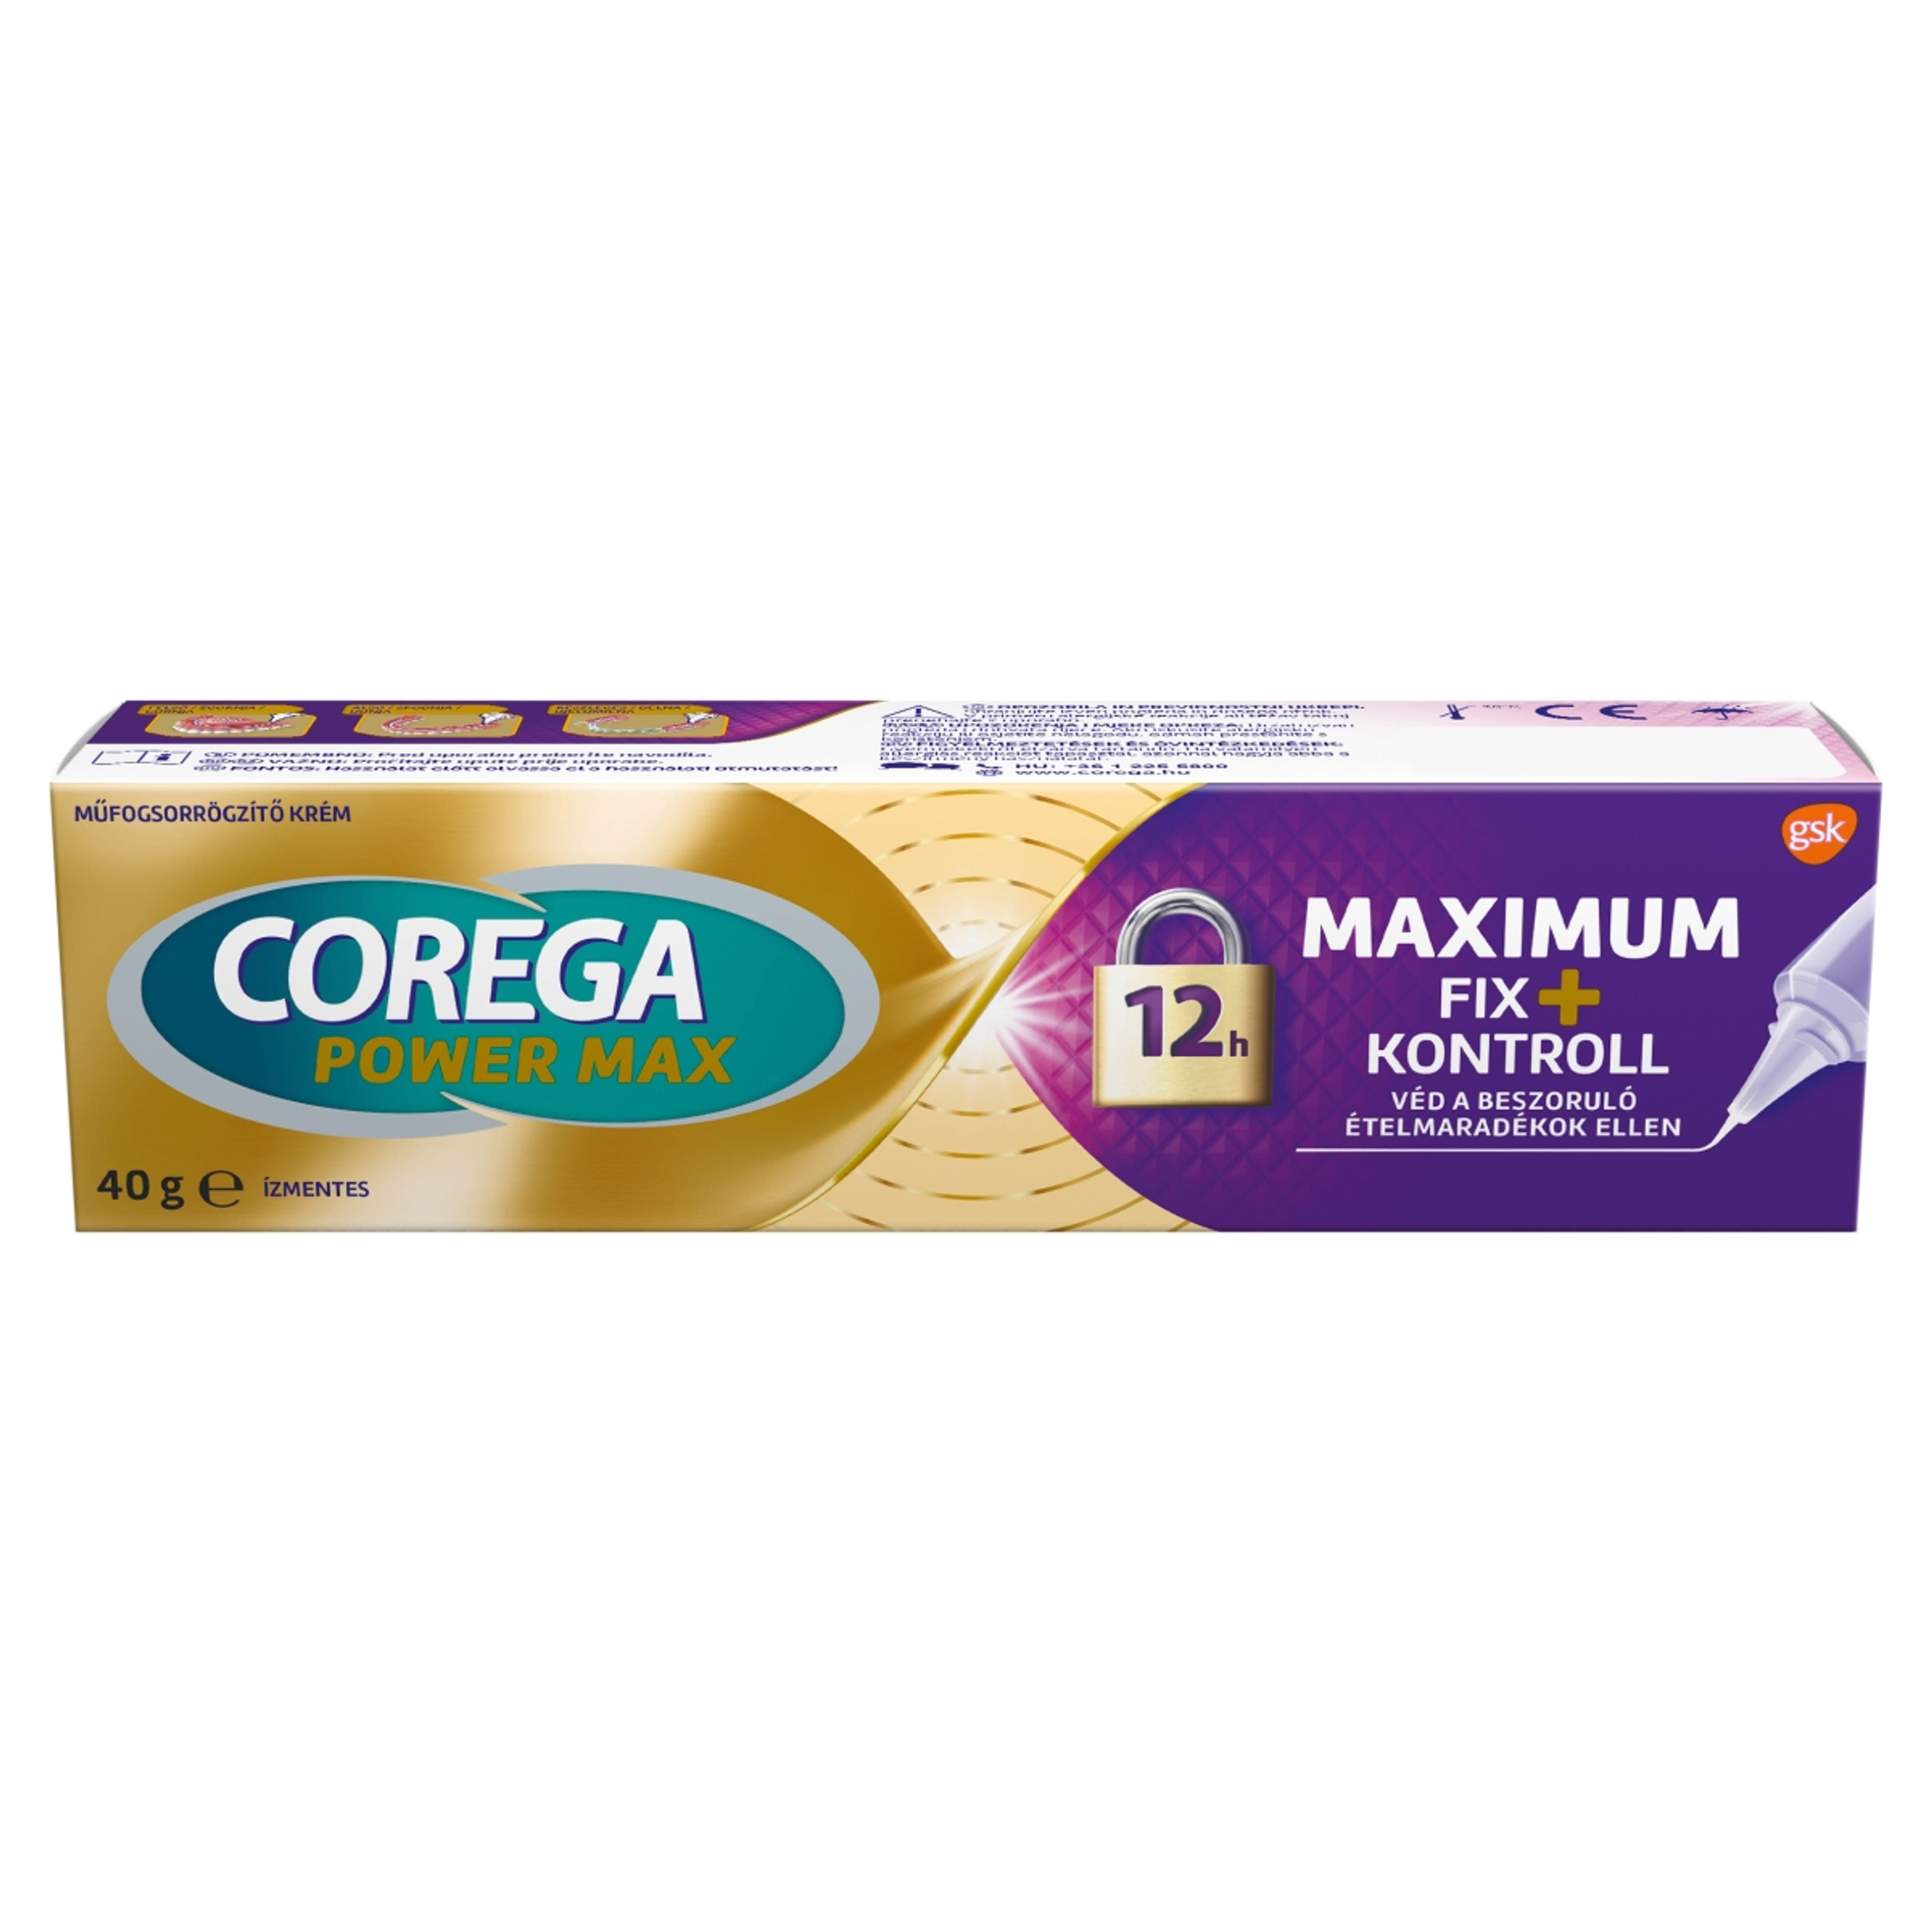 Corega Max Kontroll műfogsorrögzítő krém - 40 g